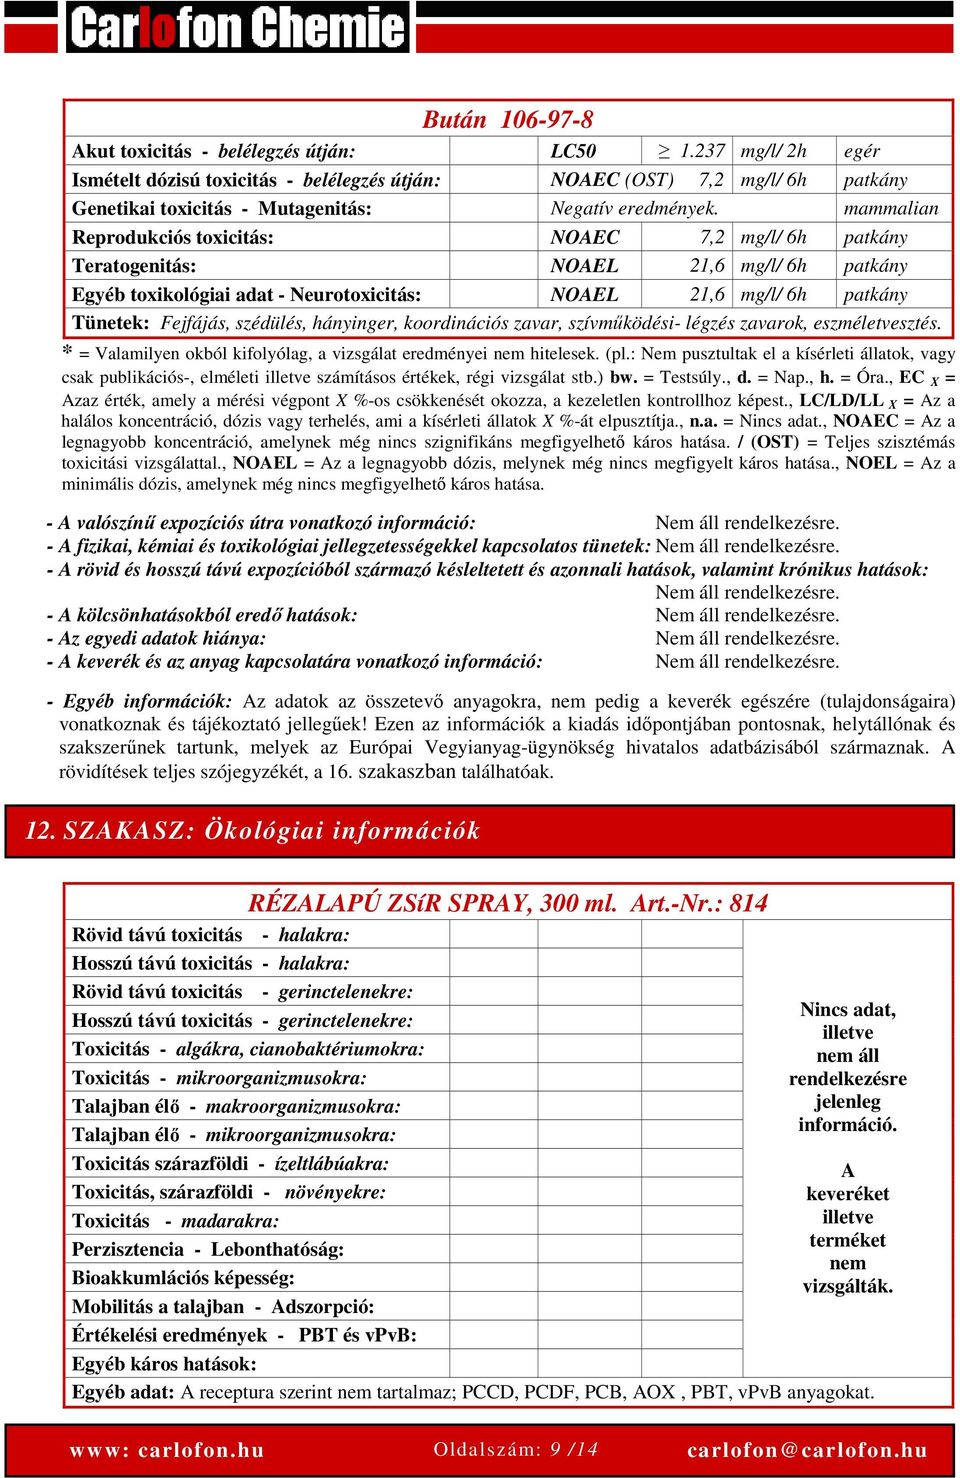 mammalian Reprodukciós toxicitás: NOAEC 7,2 mg/l/ 6h patkány Teratogenitás: NOAEL 21,6 mg/l/ 6h patkány Egyéb toxikológiai adat - Neurotoxicitás: NOAEL 21,6 mg/l/ 6h patkány Tünetek: Fejfájás,